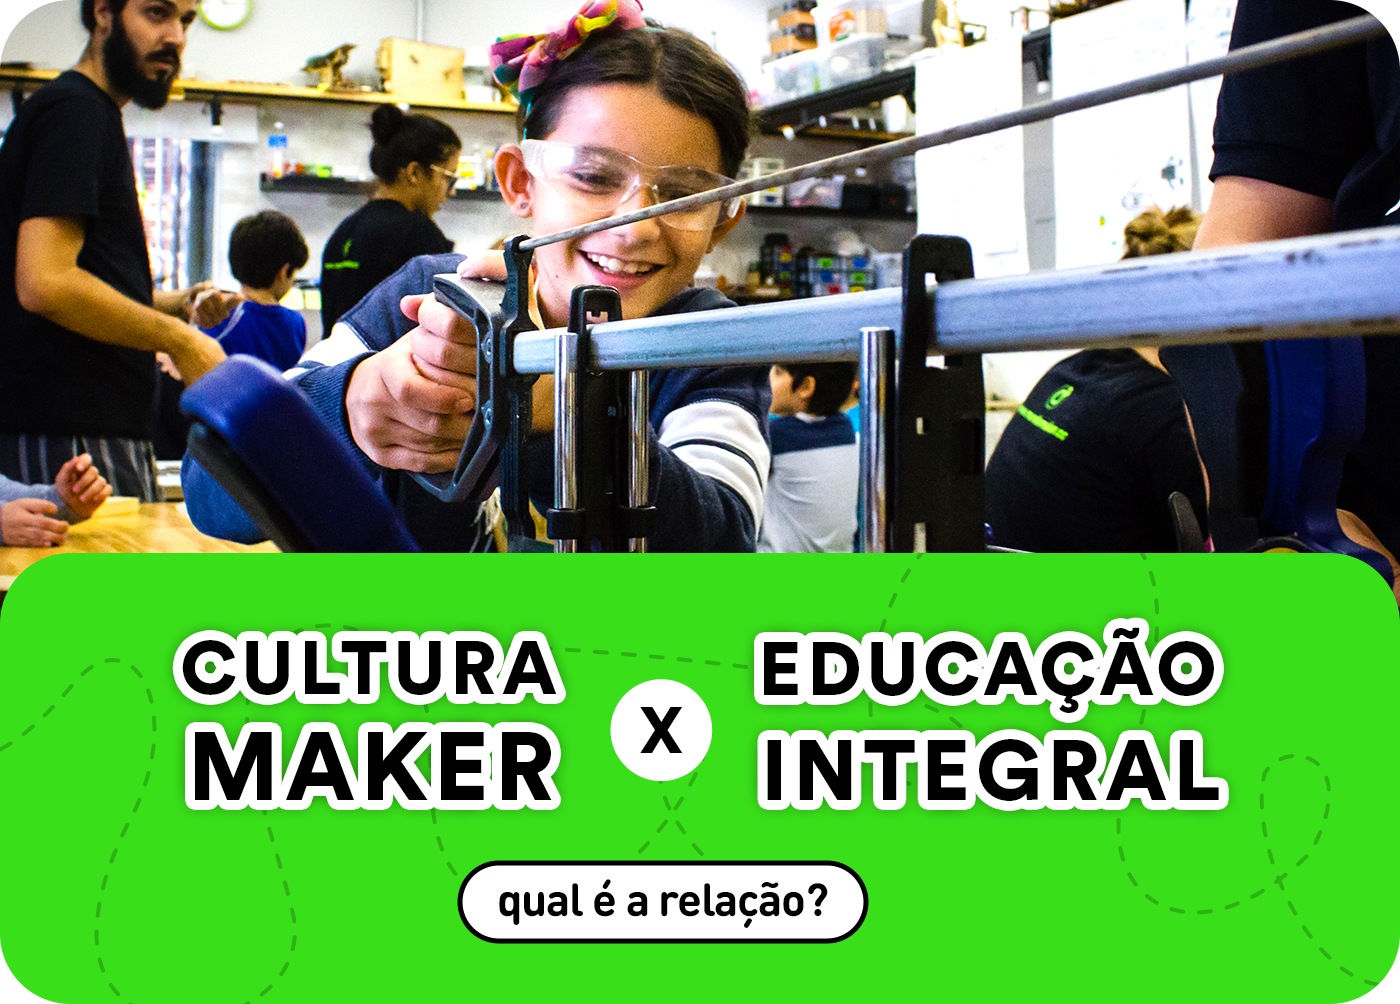 Cultura maker cresce no país com maior conexão à internet - Bem Paraná